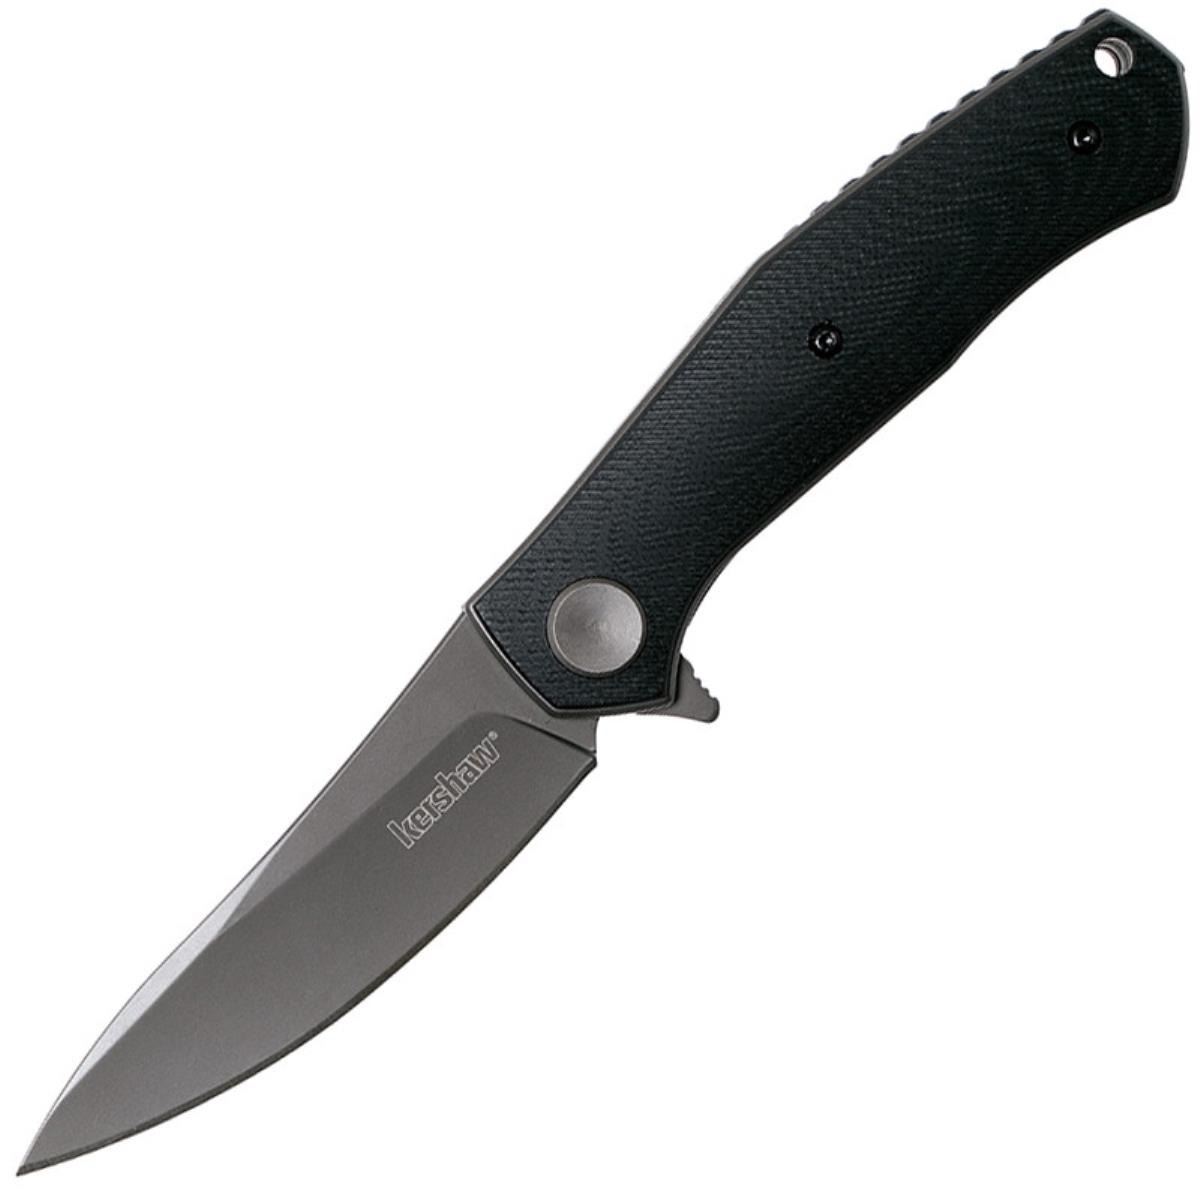 Нож K4020 Concierge - нож склад., черн. рук-ть G10, клинок 8Cr13MoV, KERSHAW jbl nobang ограничитель для стенок террариума из элластичного материала